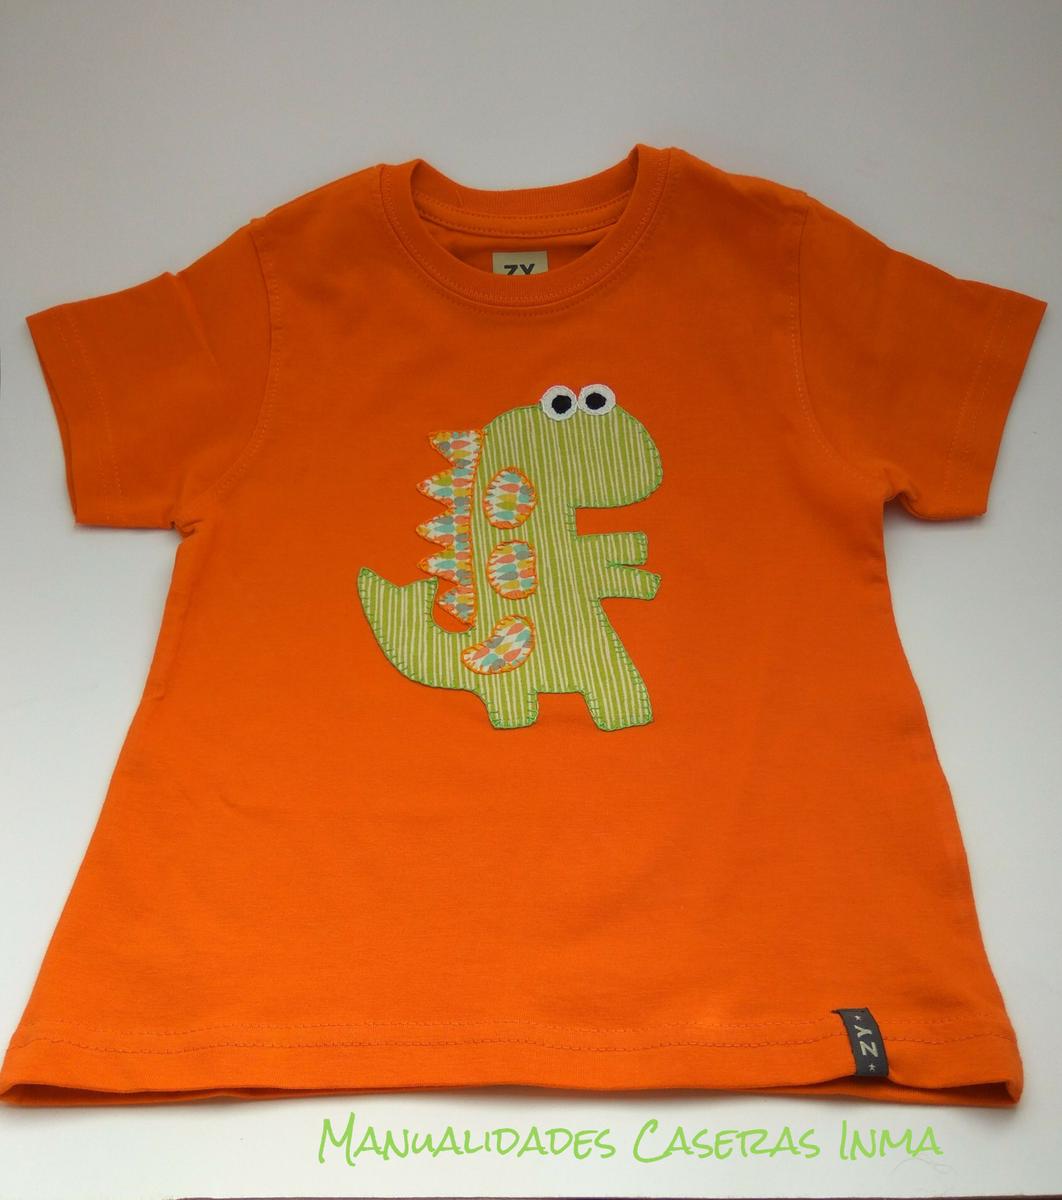 Manualidades Caseras Inma_ Camiseta dinosaurios naranja